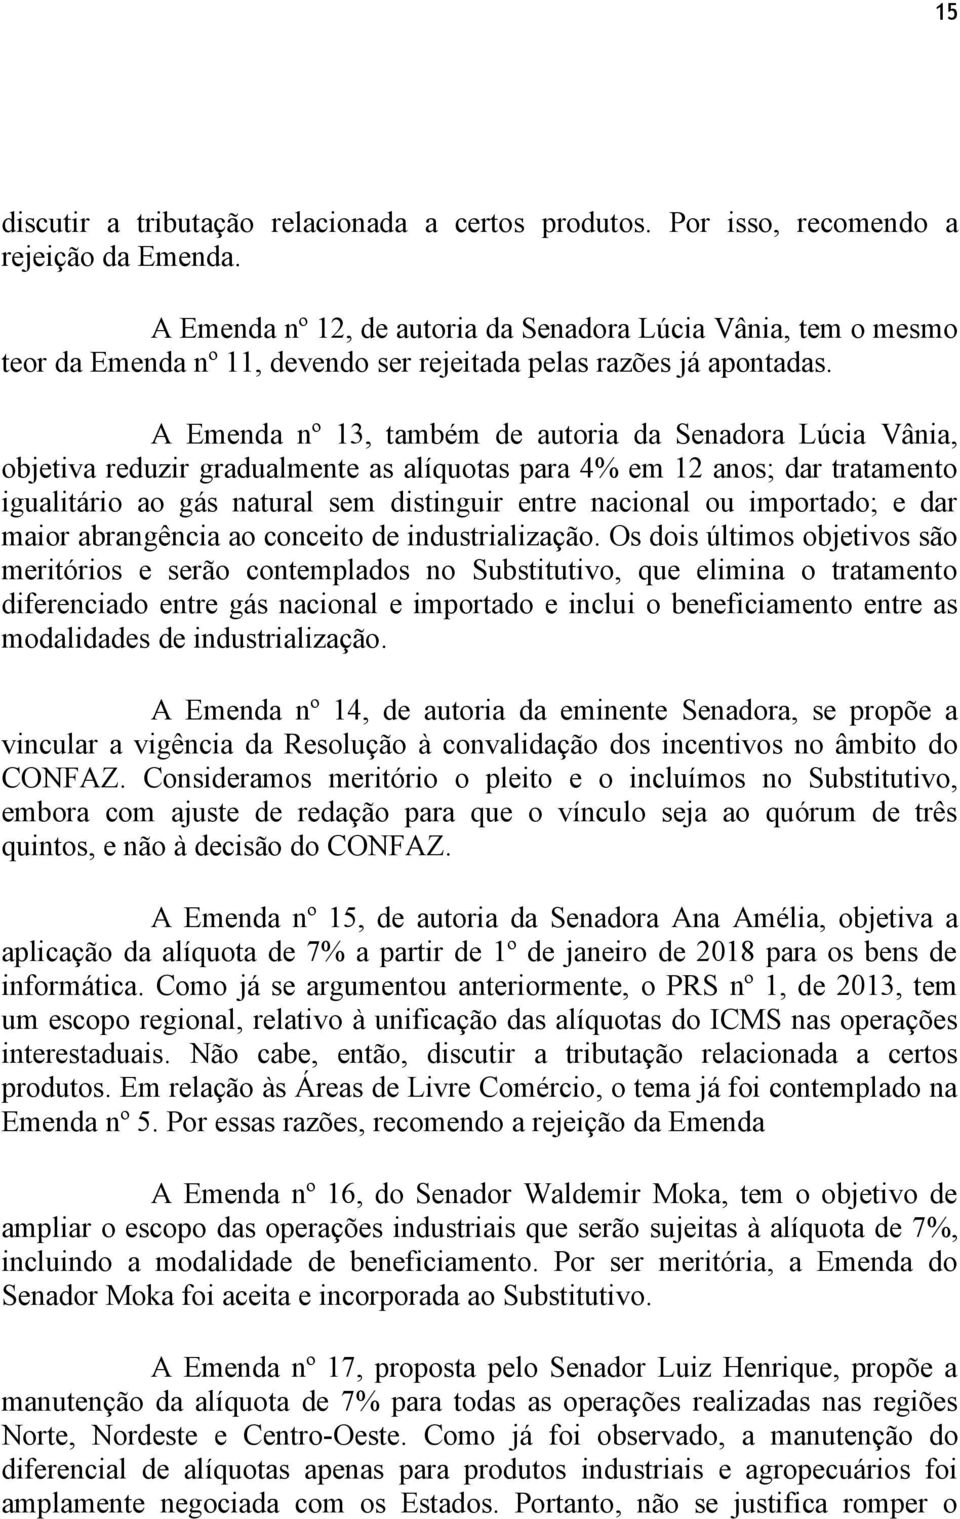 A Emenda nº 13, também de autoria da Senadora Lúcia Vânia, objetiva reduzir gradualmente as alíquotas para 4% em 12 anos; dar tratamento igualitário ao gás natural sem distinguir entre nacional ou